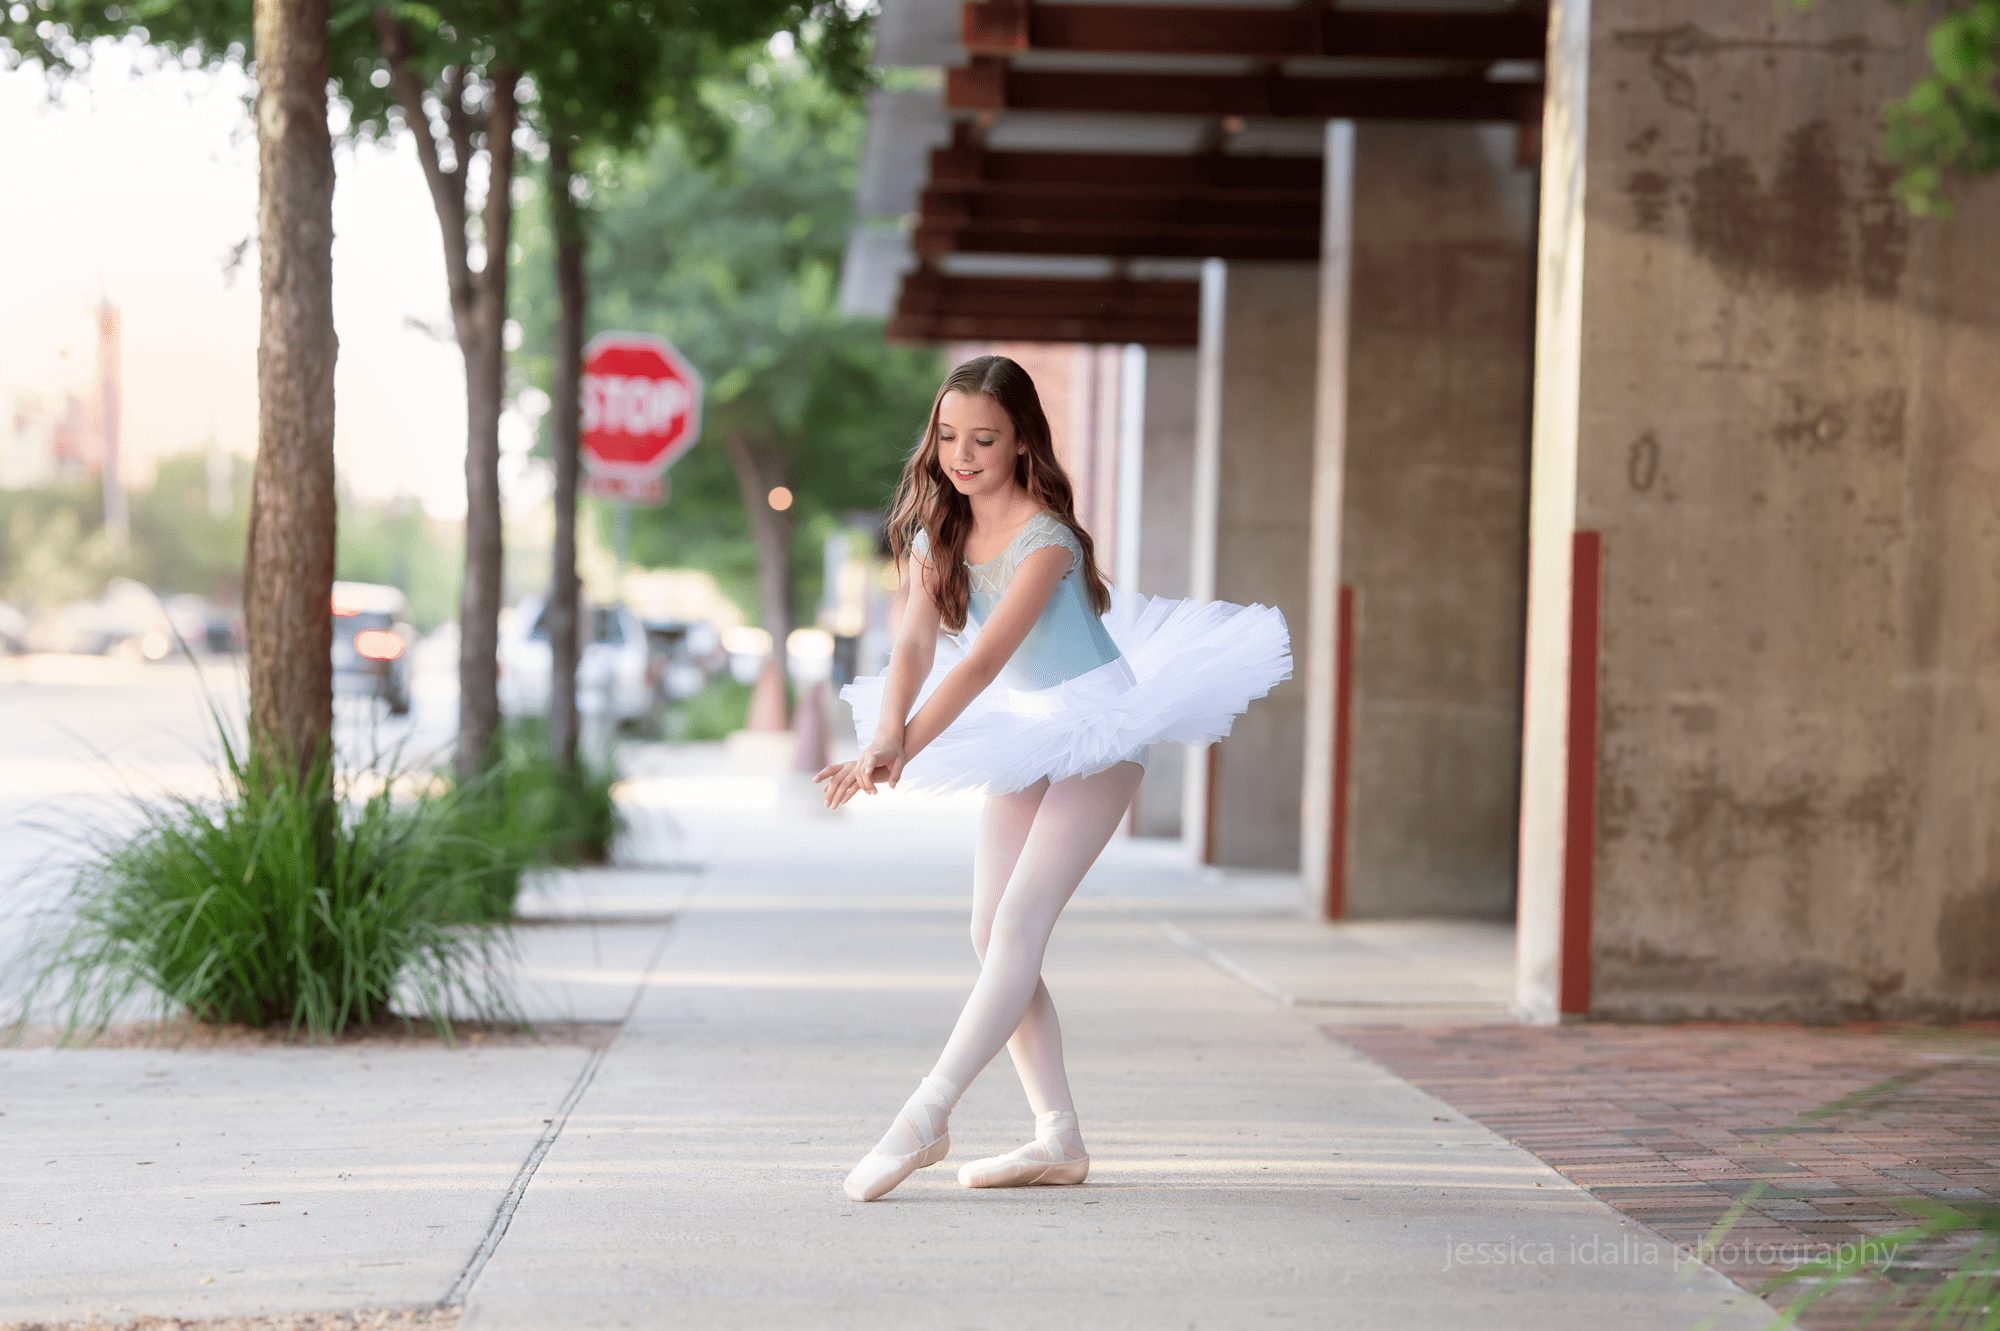 Ballerina Portrait downtown sidewalk